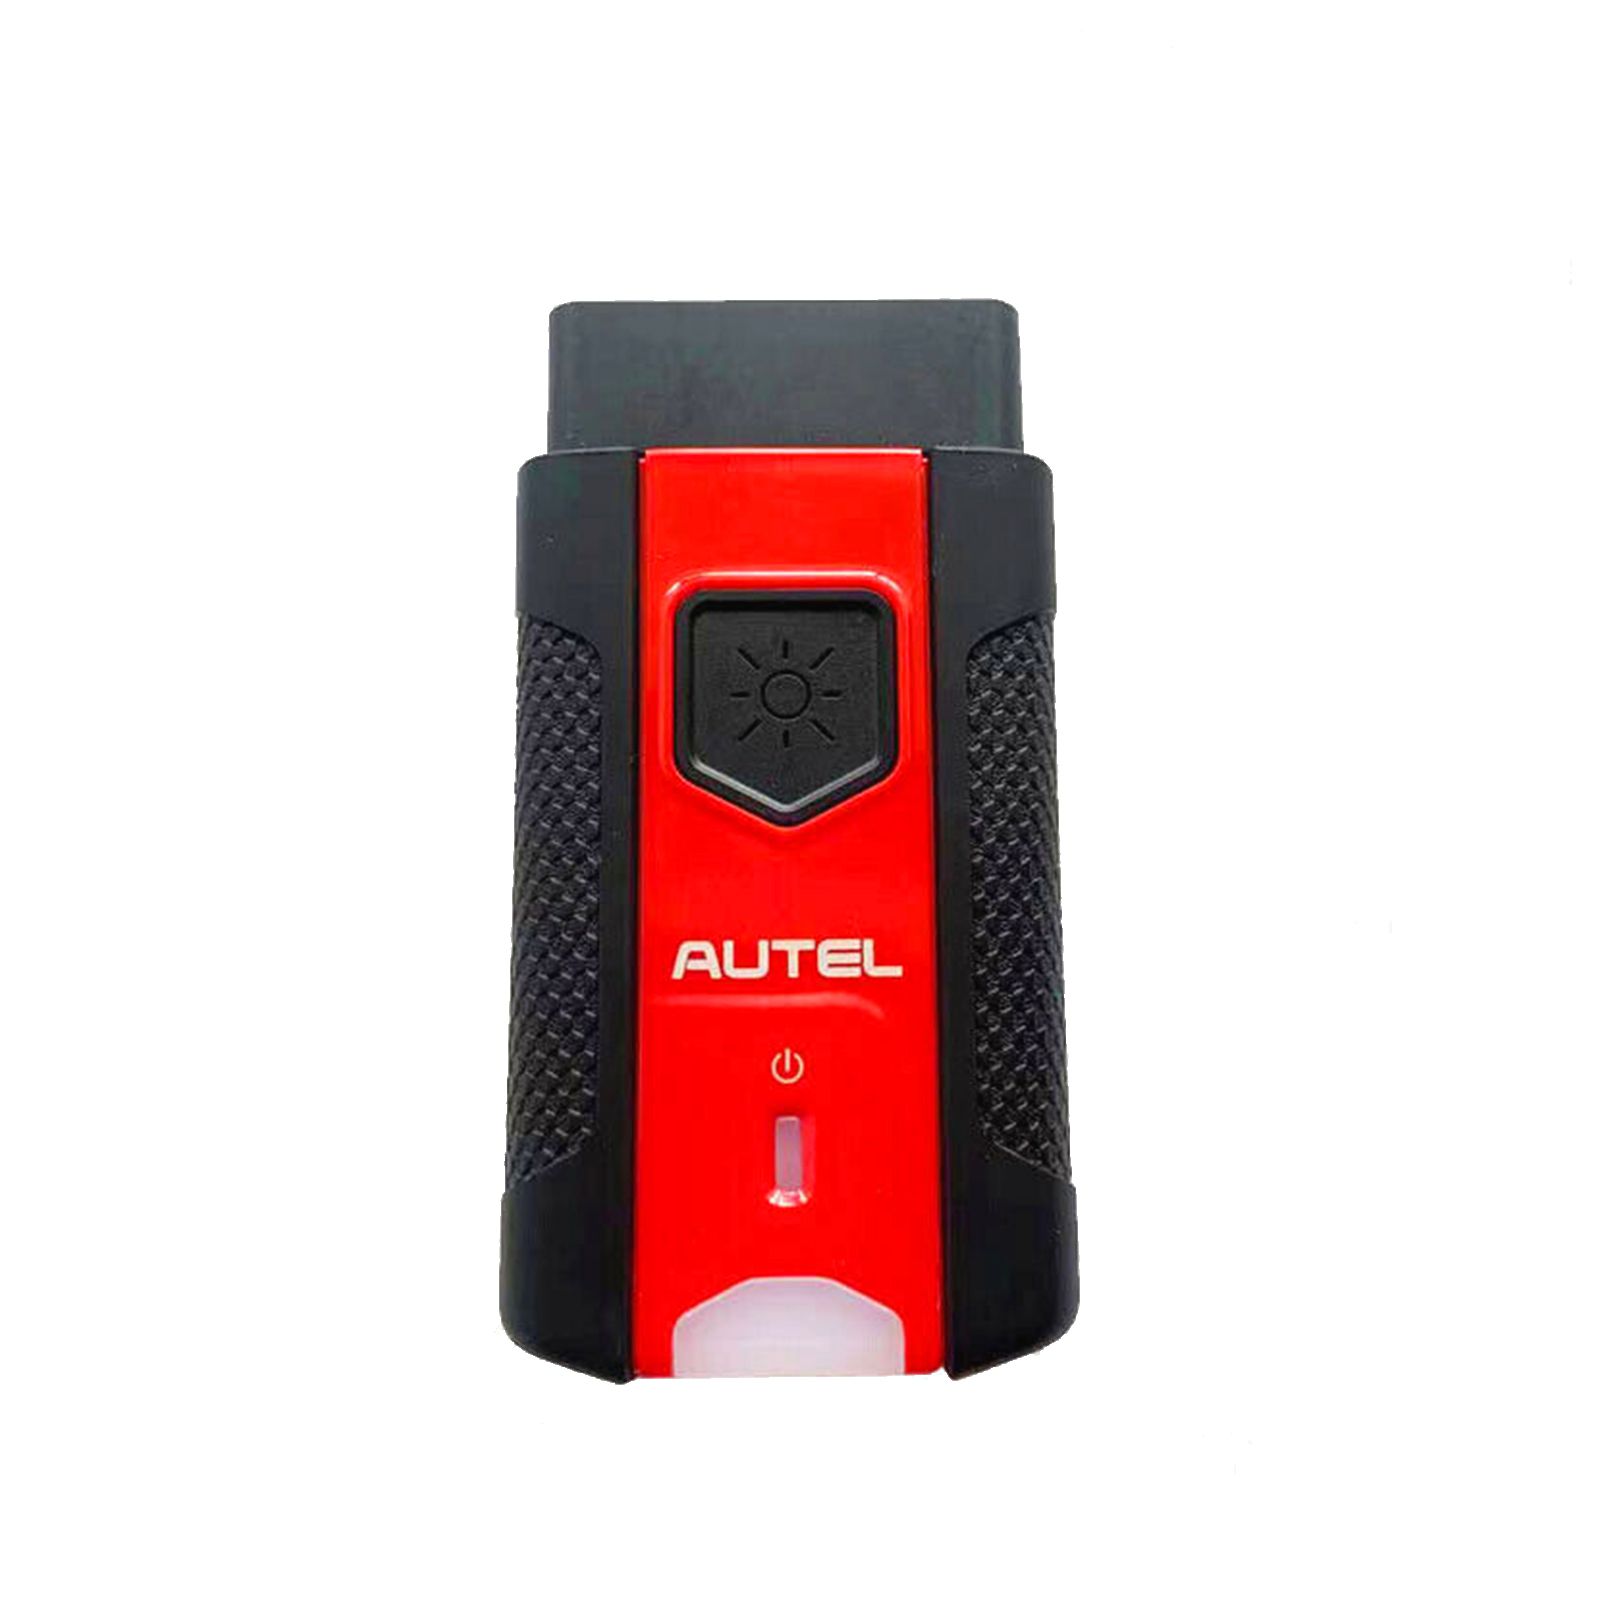 Autel MaxiVCI VCI 200 Bluetooth를 진단 태블릿 MS906 PRO ITS600K8과 함께 사용